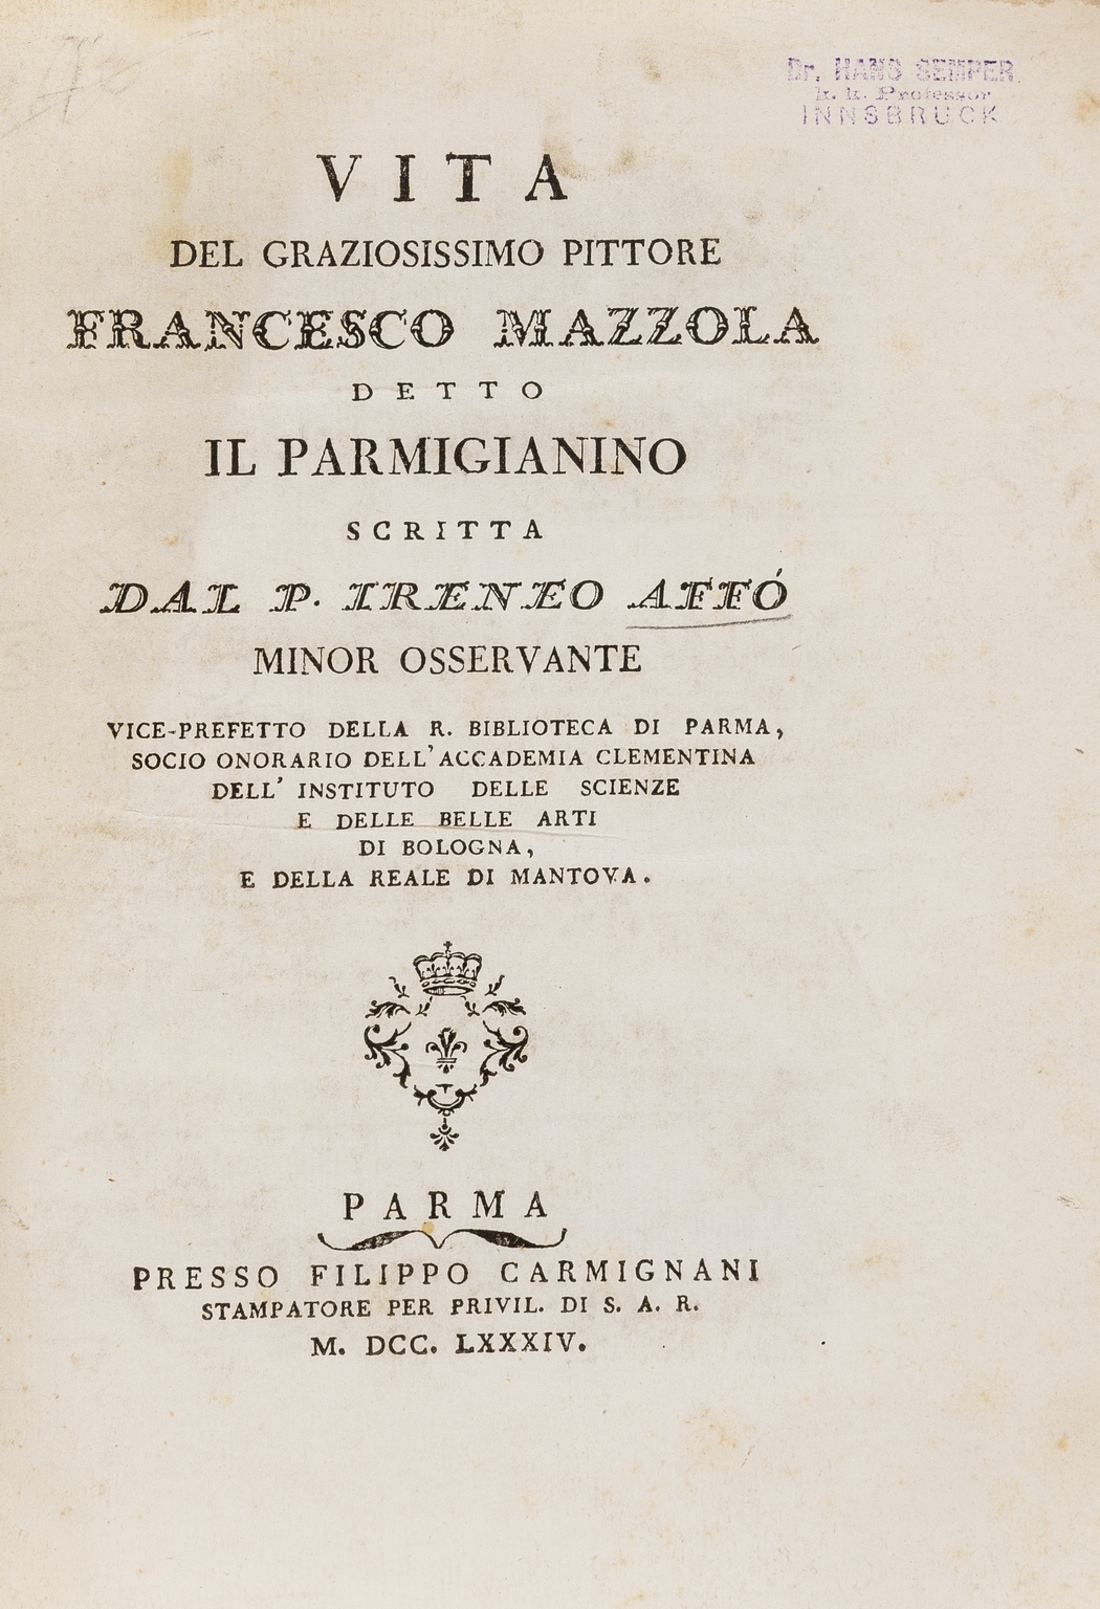 Affo (Ireneo) Vita del graziosissimo pittore Francesco Mazzola detto Il Parmigianino, second …